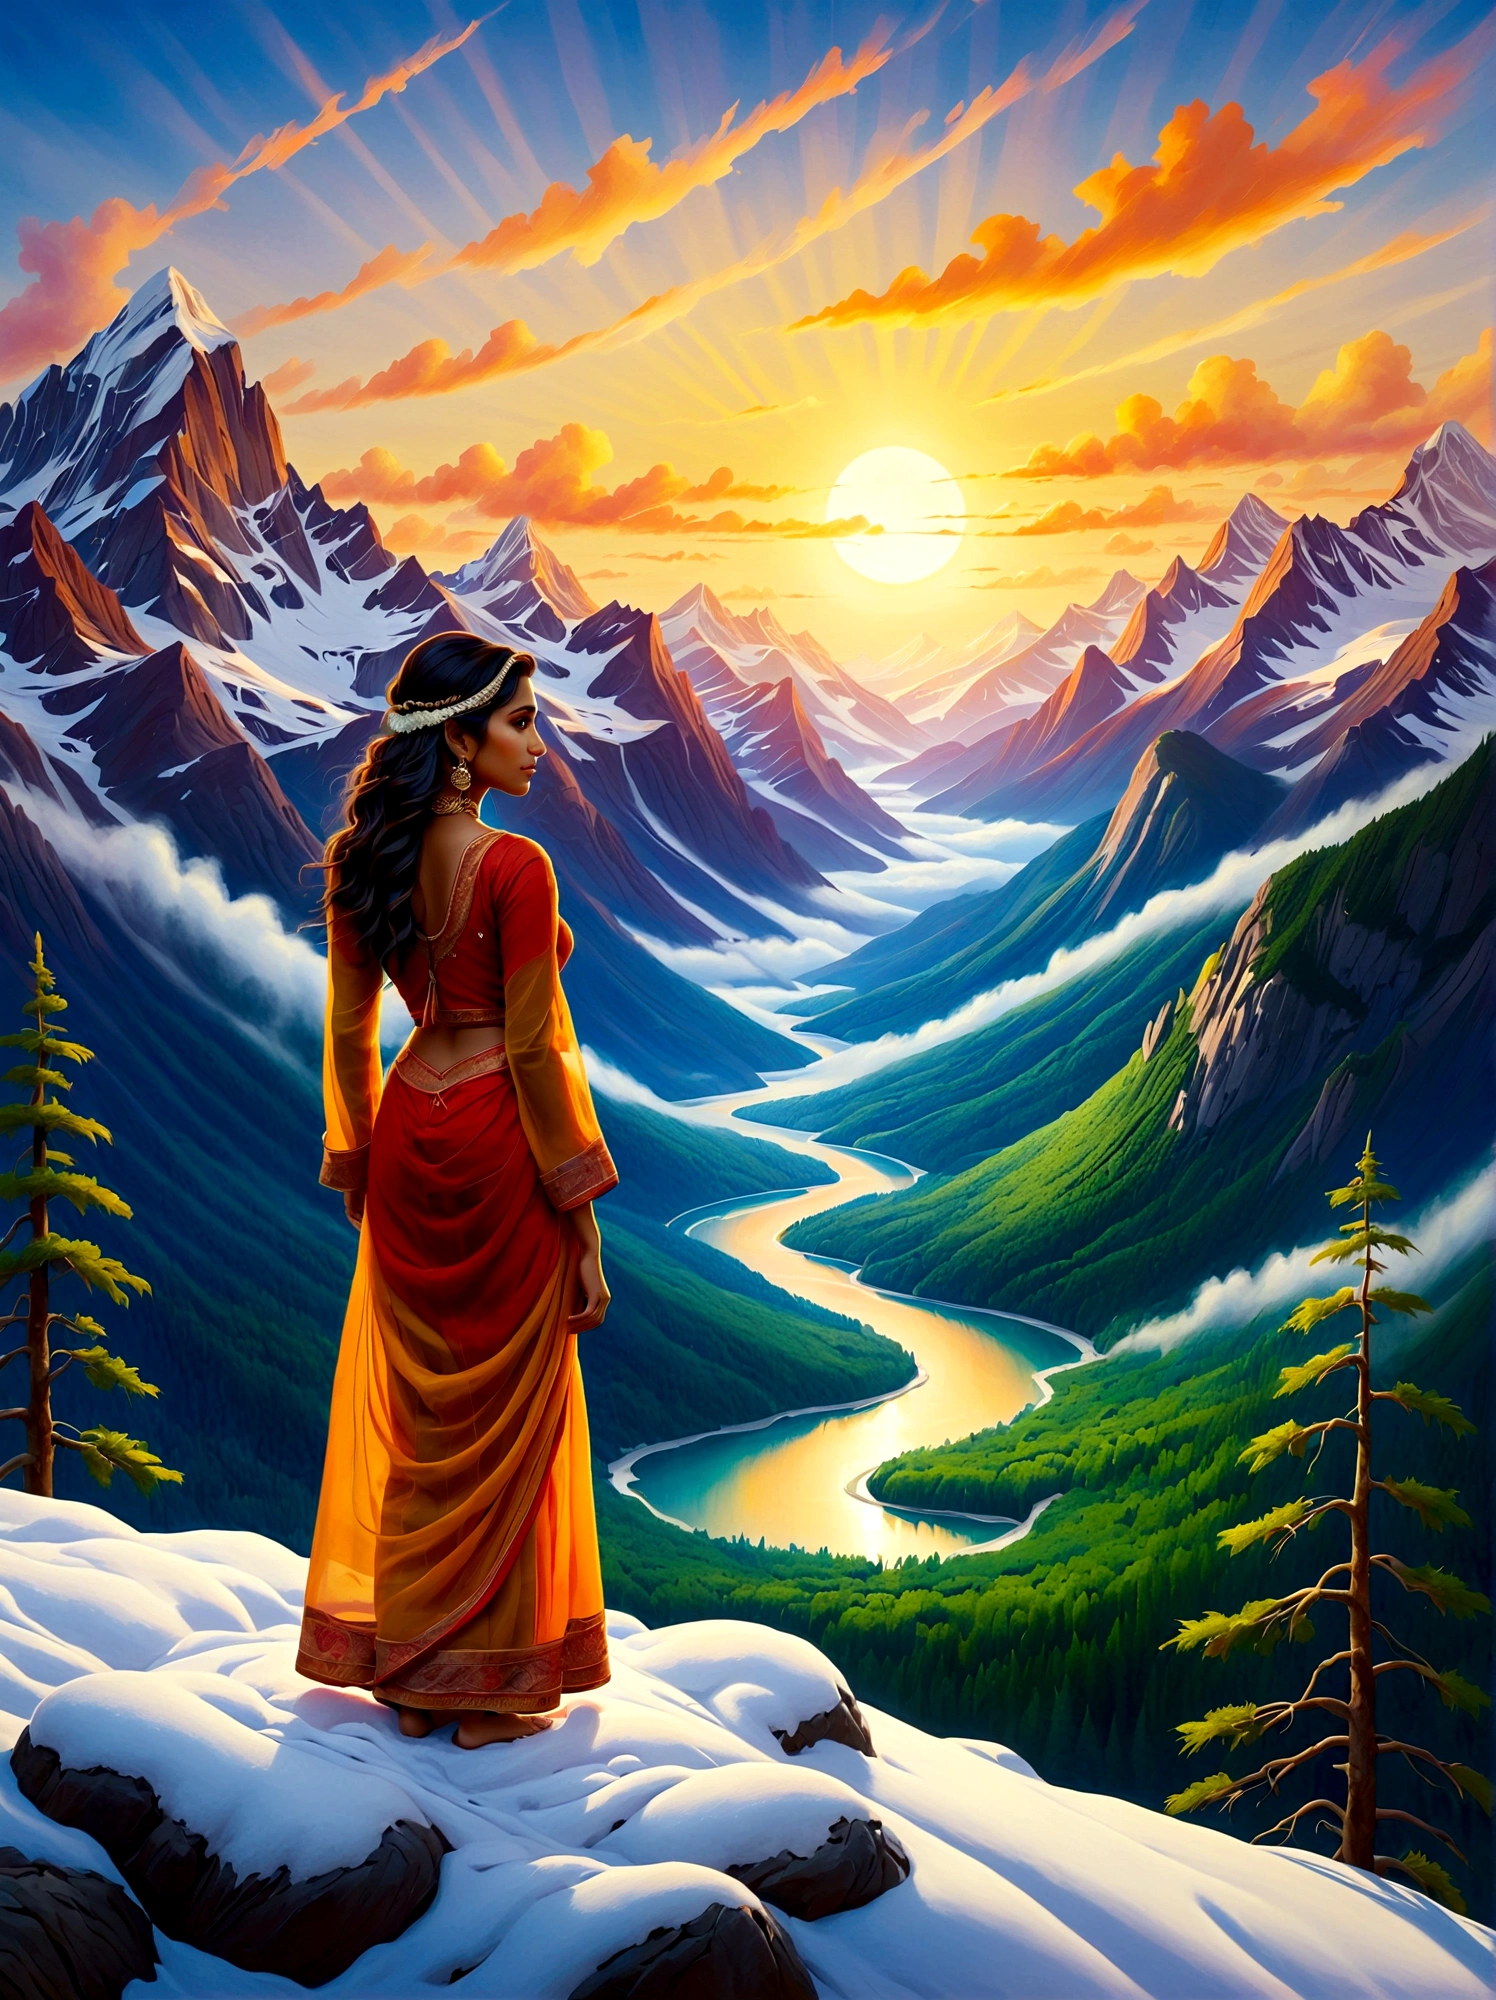 (日の出時刻:1.6), 雪を頂いた山の頂上に立つ南アジアの少女を描いた油絵を描きます. 彼女は、緑豊かな森に囲まれた周囲の壮大な景色を眺めている。, 曲がりくねった川, 霧に包まれたそびえ立つ山々. 太陽に照らされた明るい, 景色はオレンジ色に染まる, 黄色, そして赤. 作品全体は、手つかずの自然の中での孤独の静けさと、山岳風景の畏敬の念を起こさせる壮大さの両方を包含するものであるべきである。